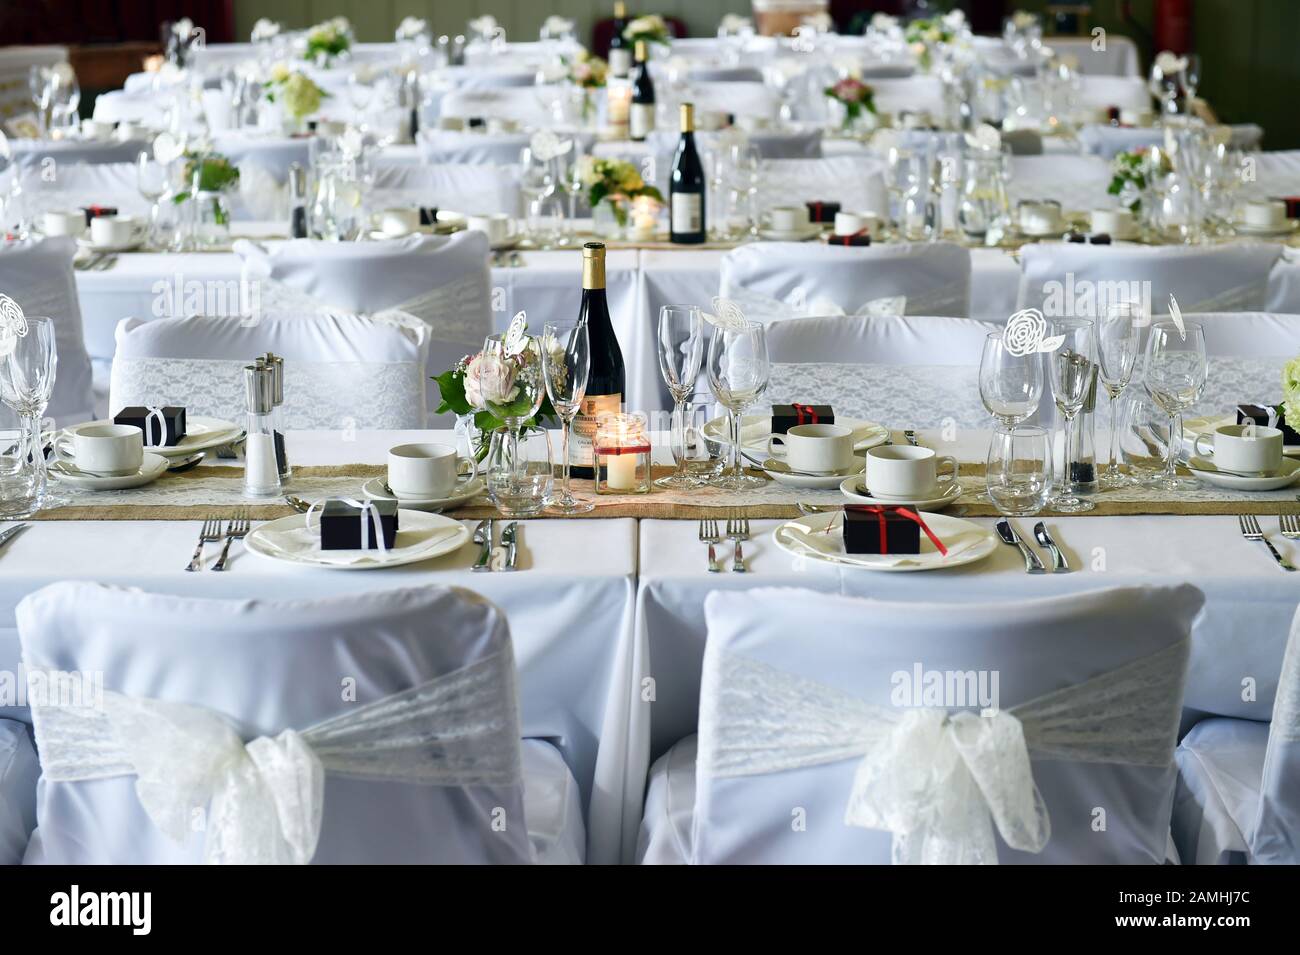 Tische und Stühle für die große Feier mit Wein und Geschenken stehen bereit. Stockfoto